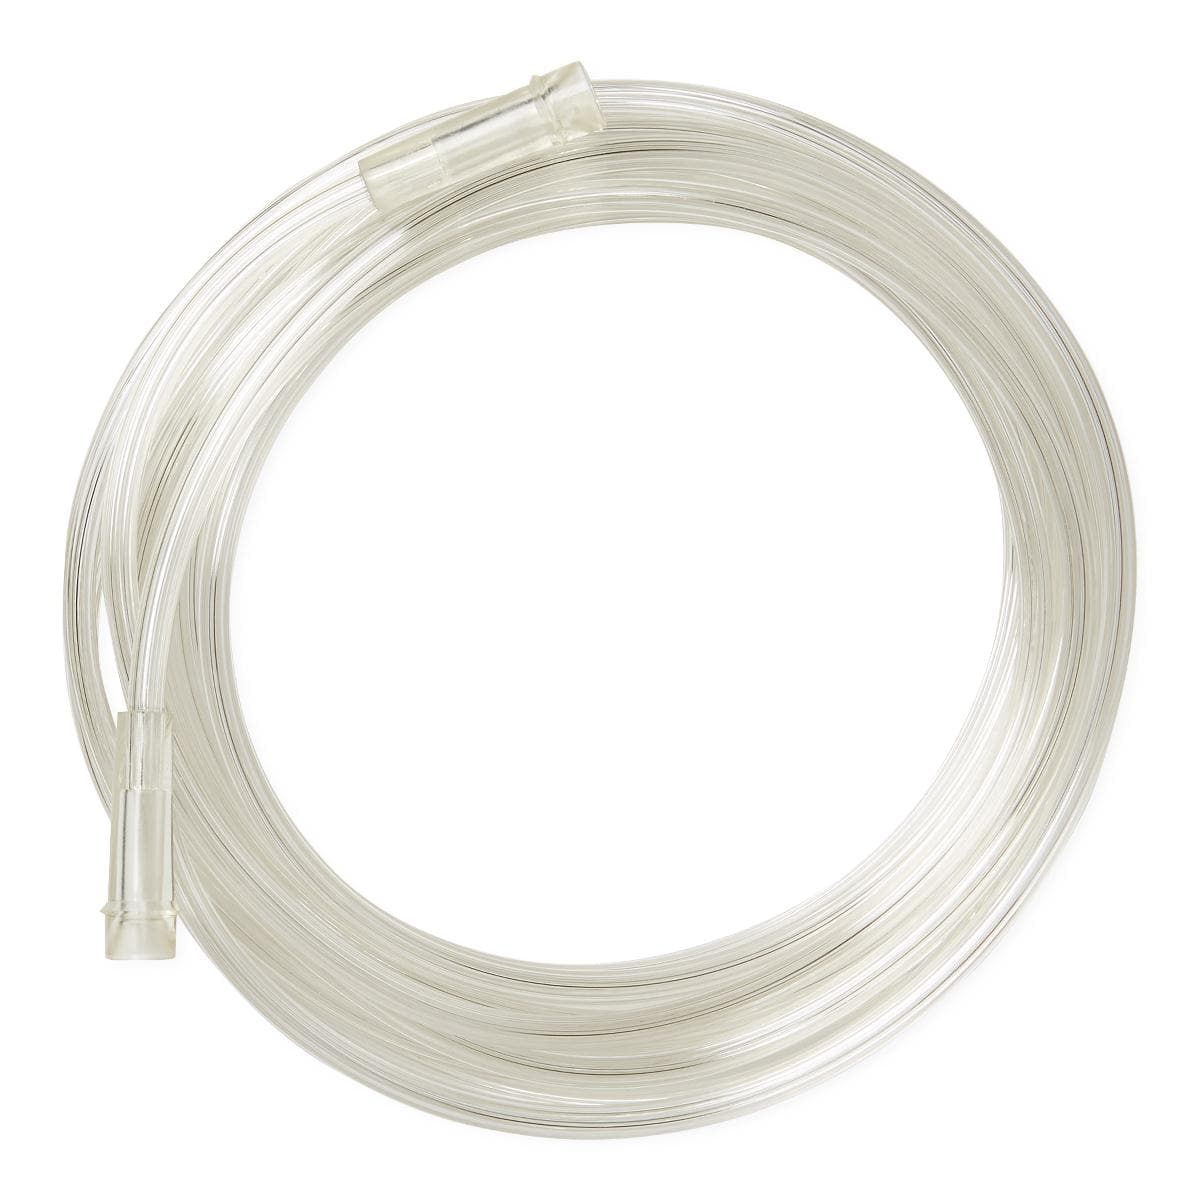 Medline Medline Clear Oxygen Tubing with Standard Connector HCS455010